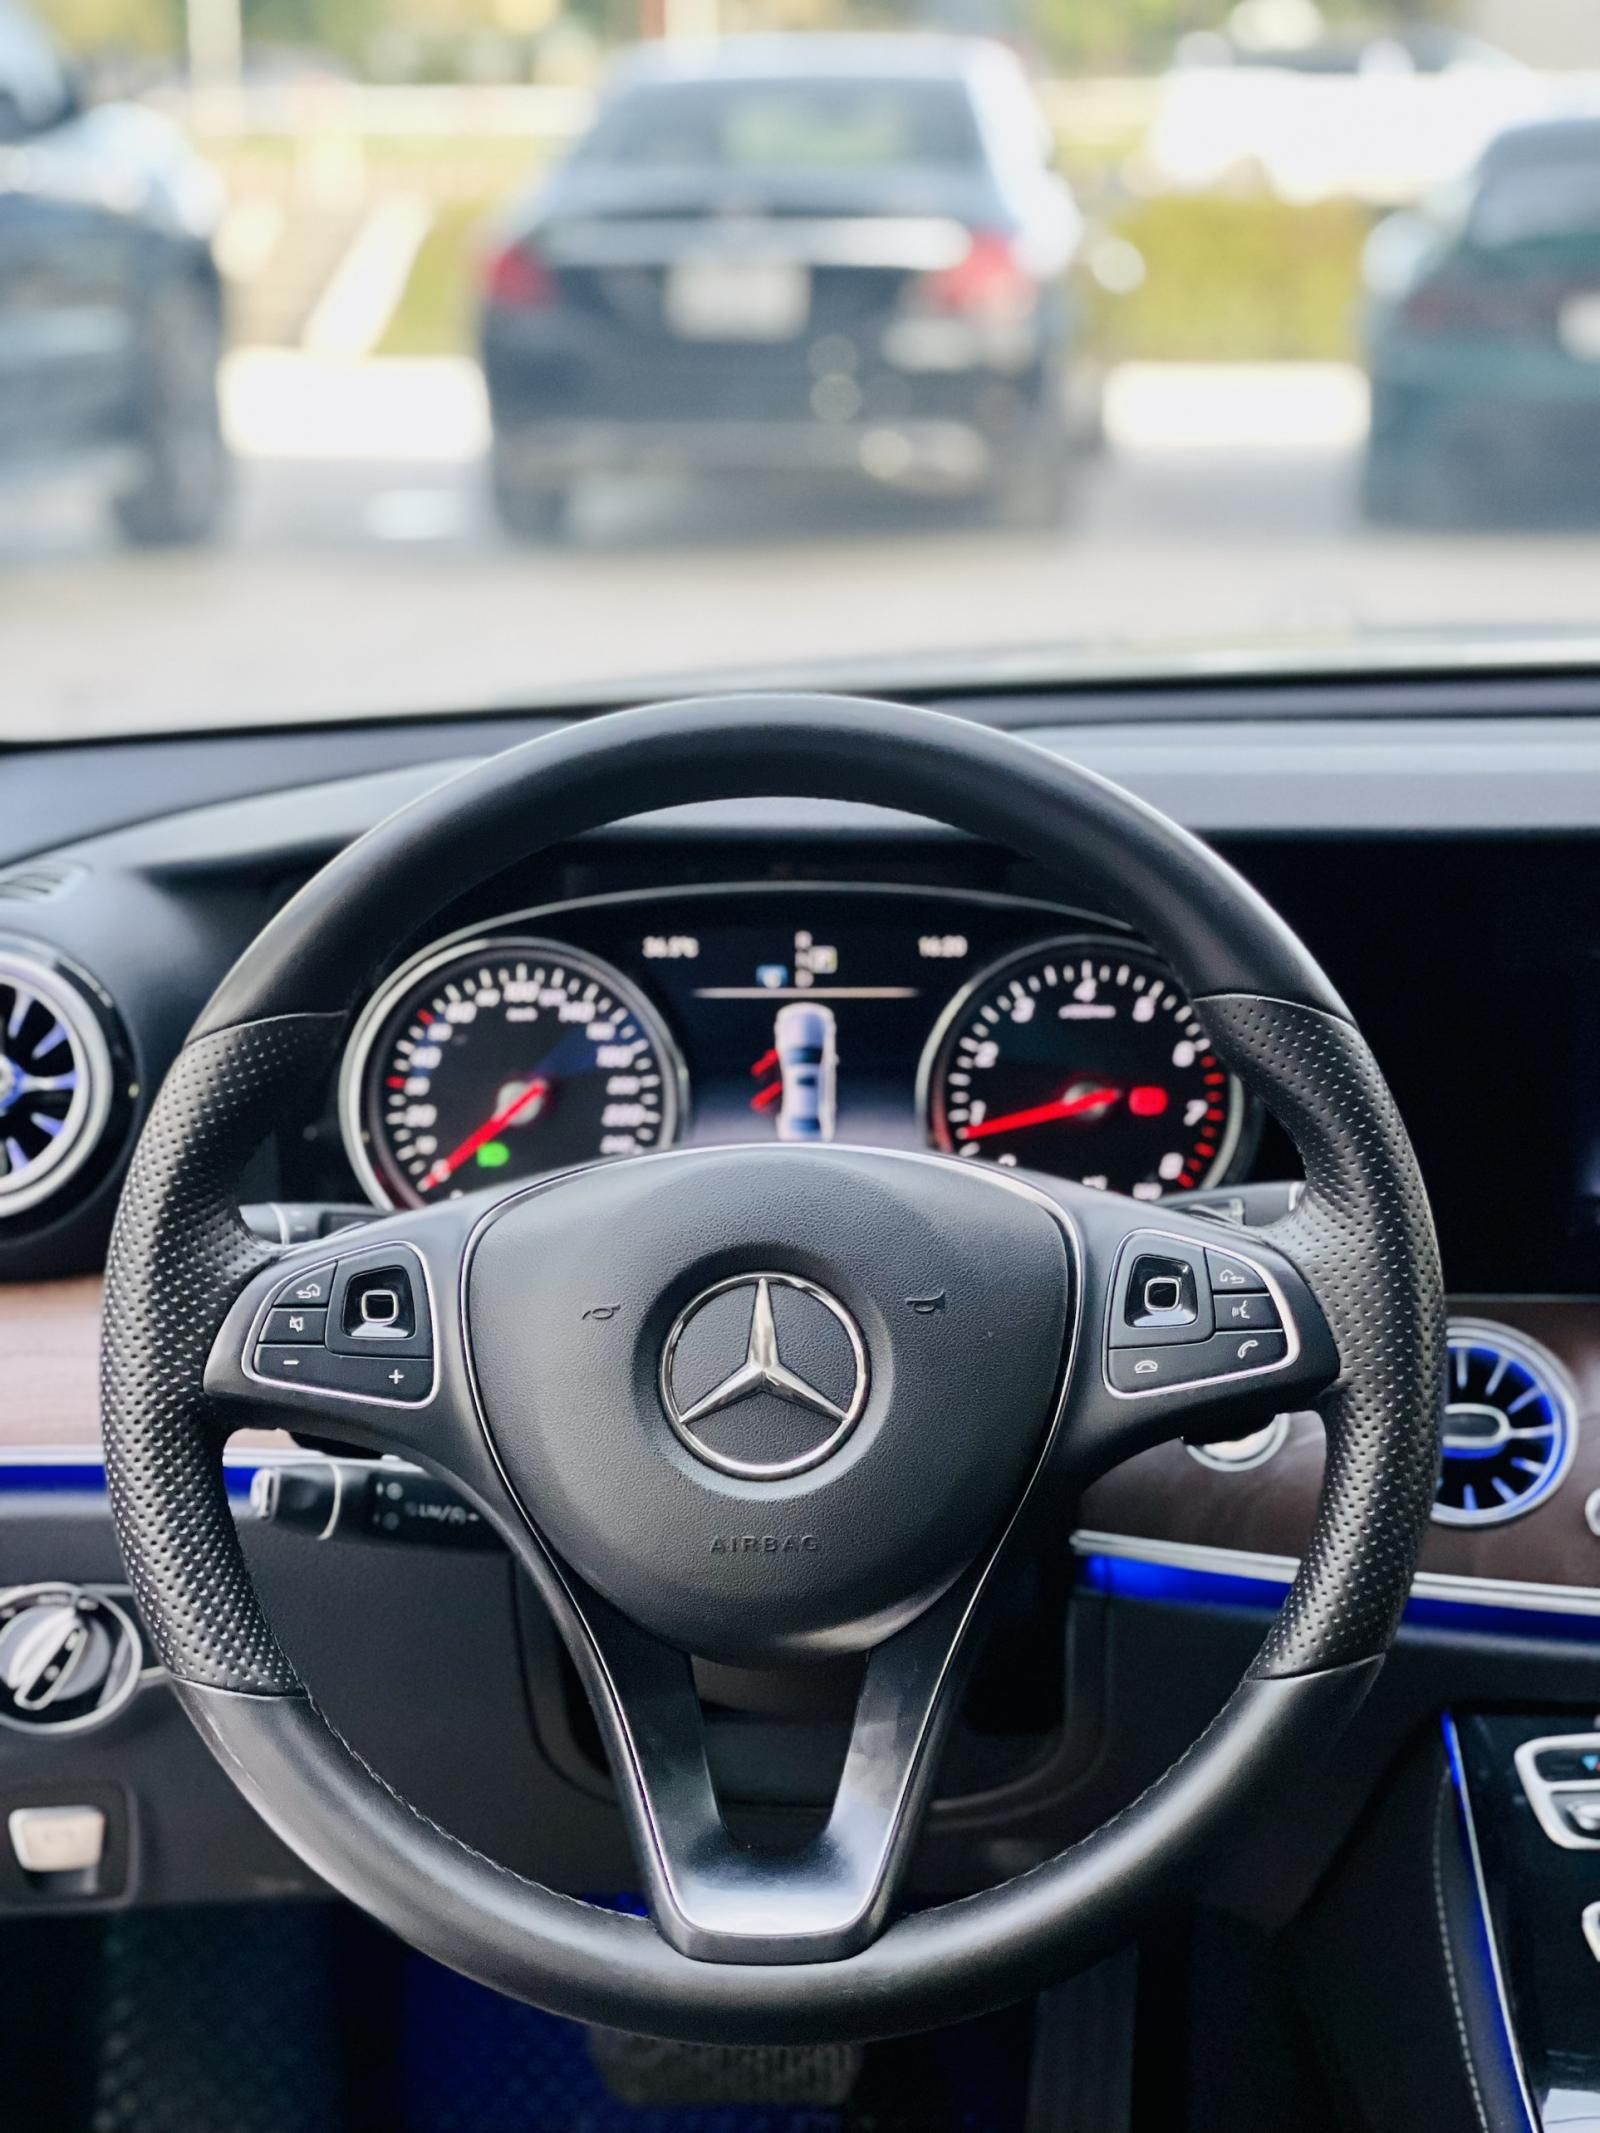 Mercedes-Benz 2016 - Model 2017 - Hỗ trợ trả góp, giao xe, test hãng toàn quốc